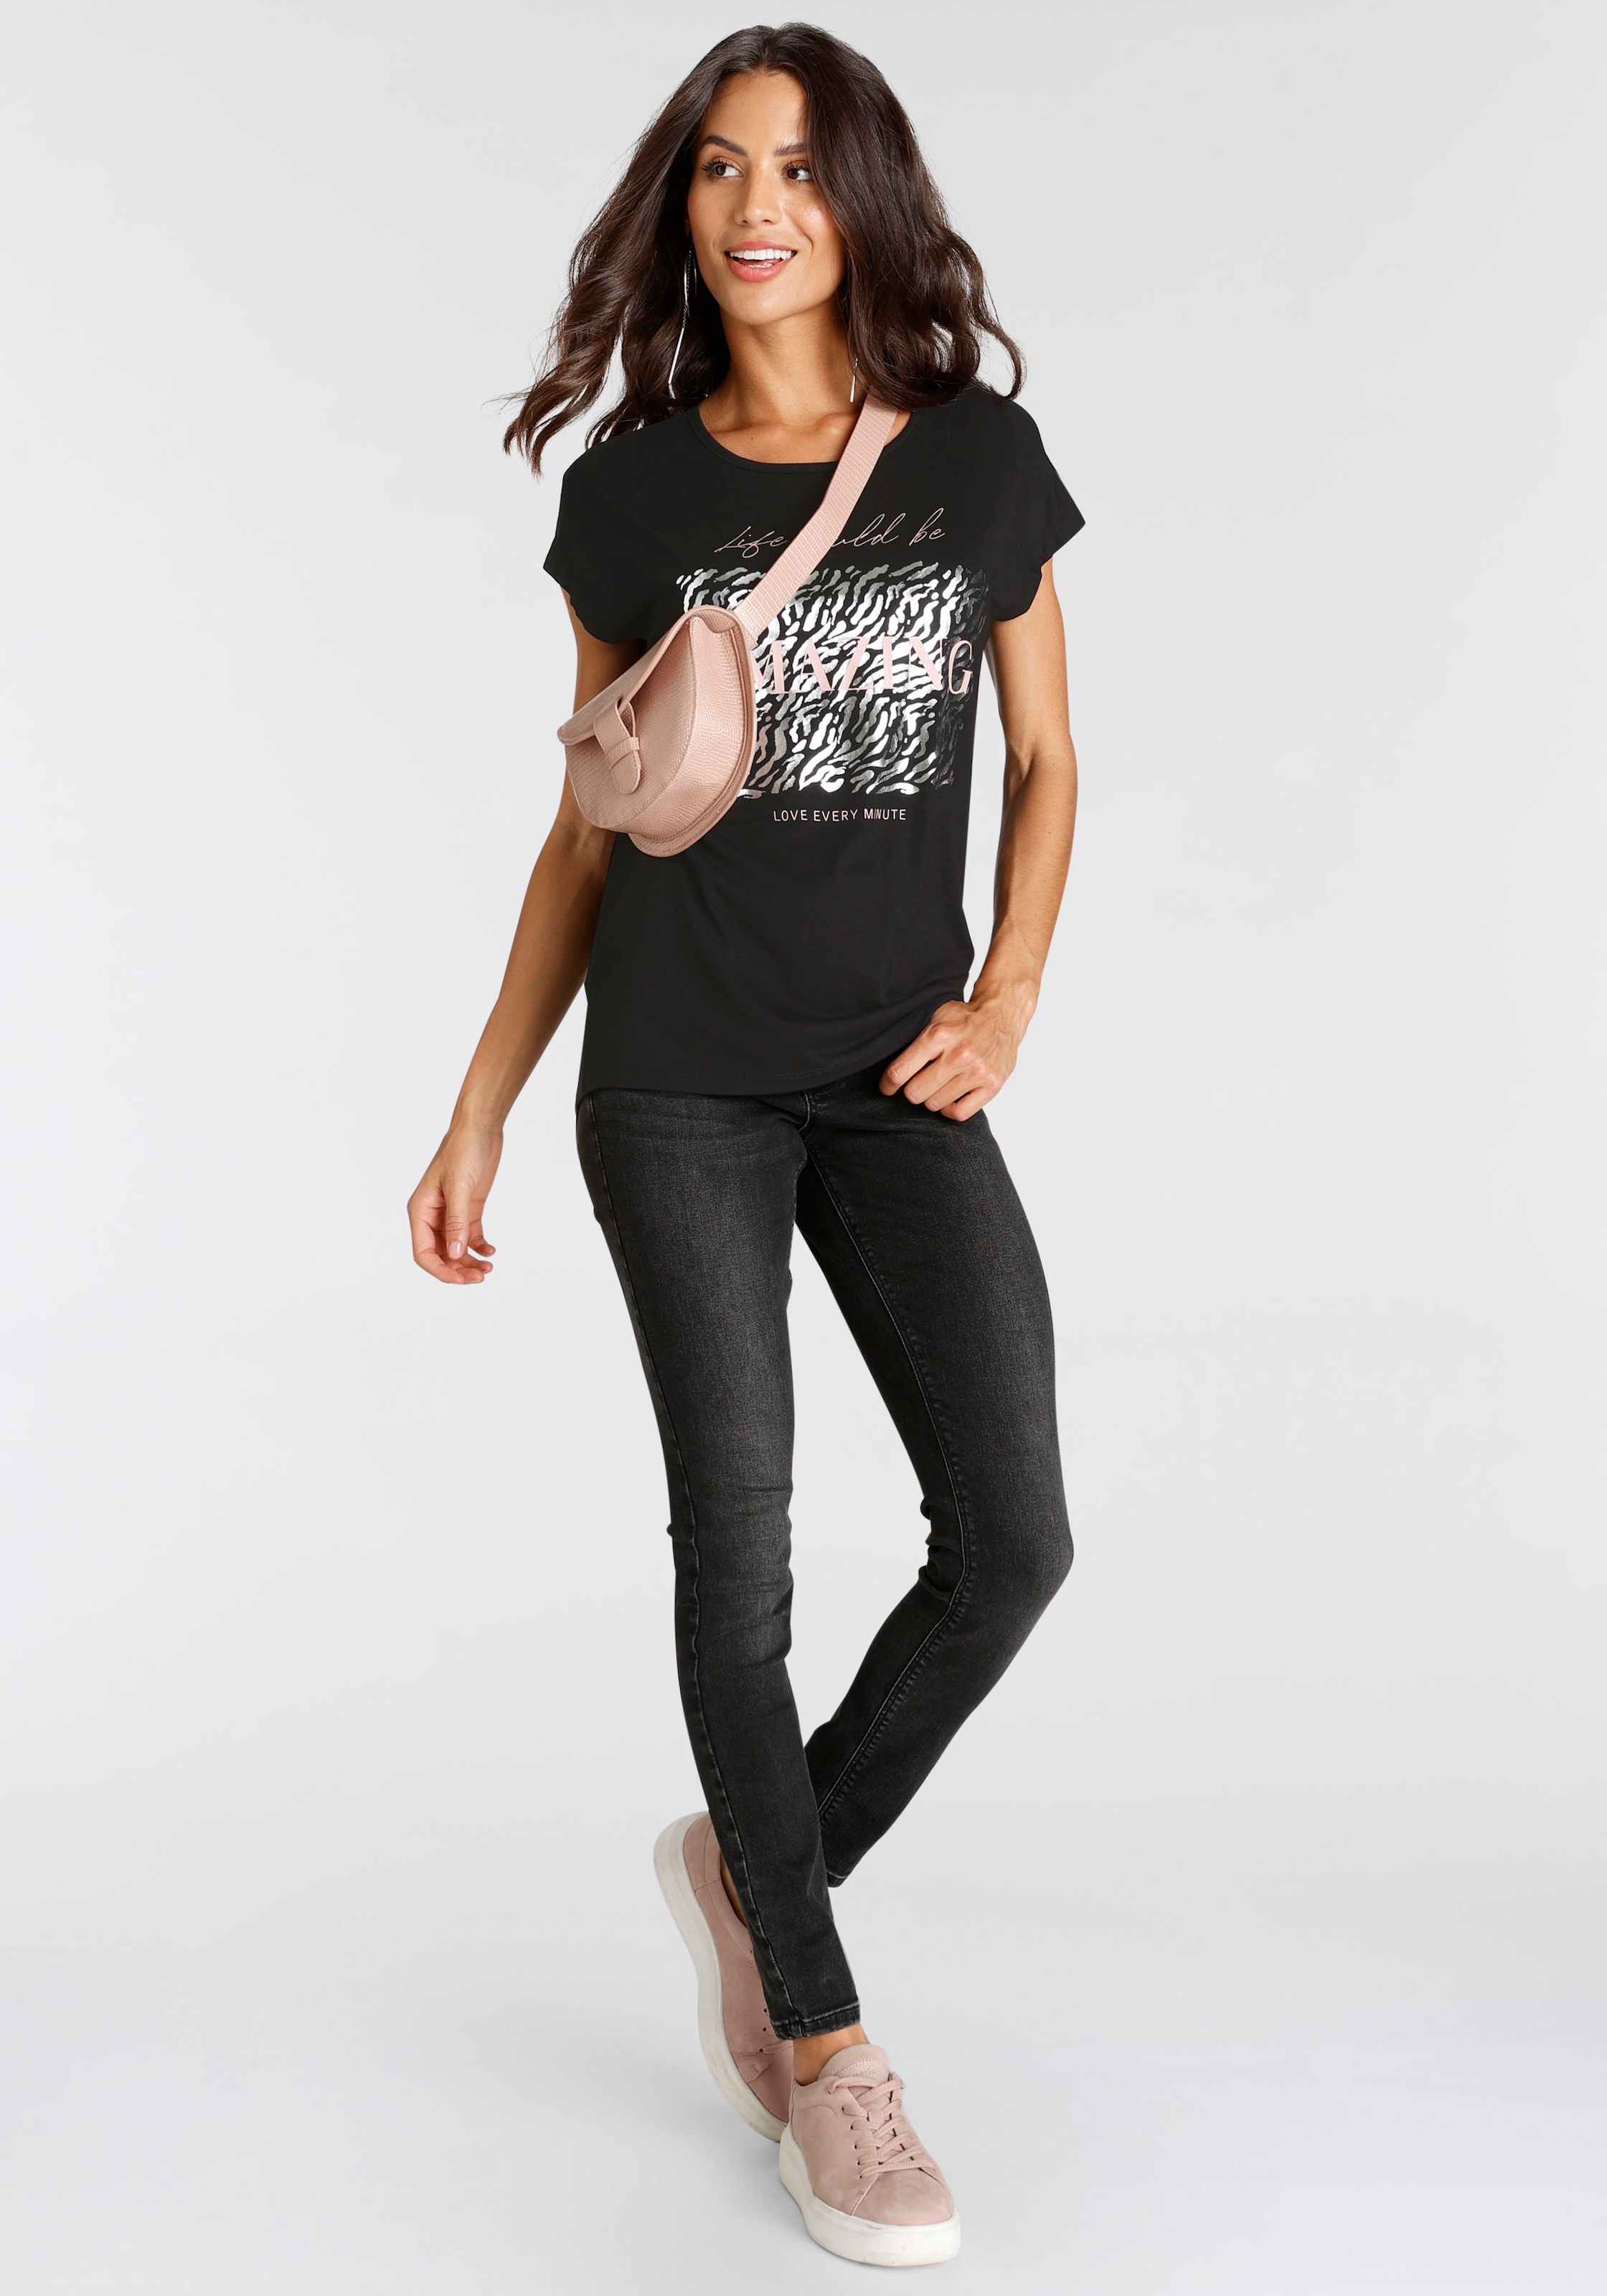 Laura Scott Folienprint kaufen mit T-Shirt, modischem